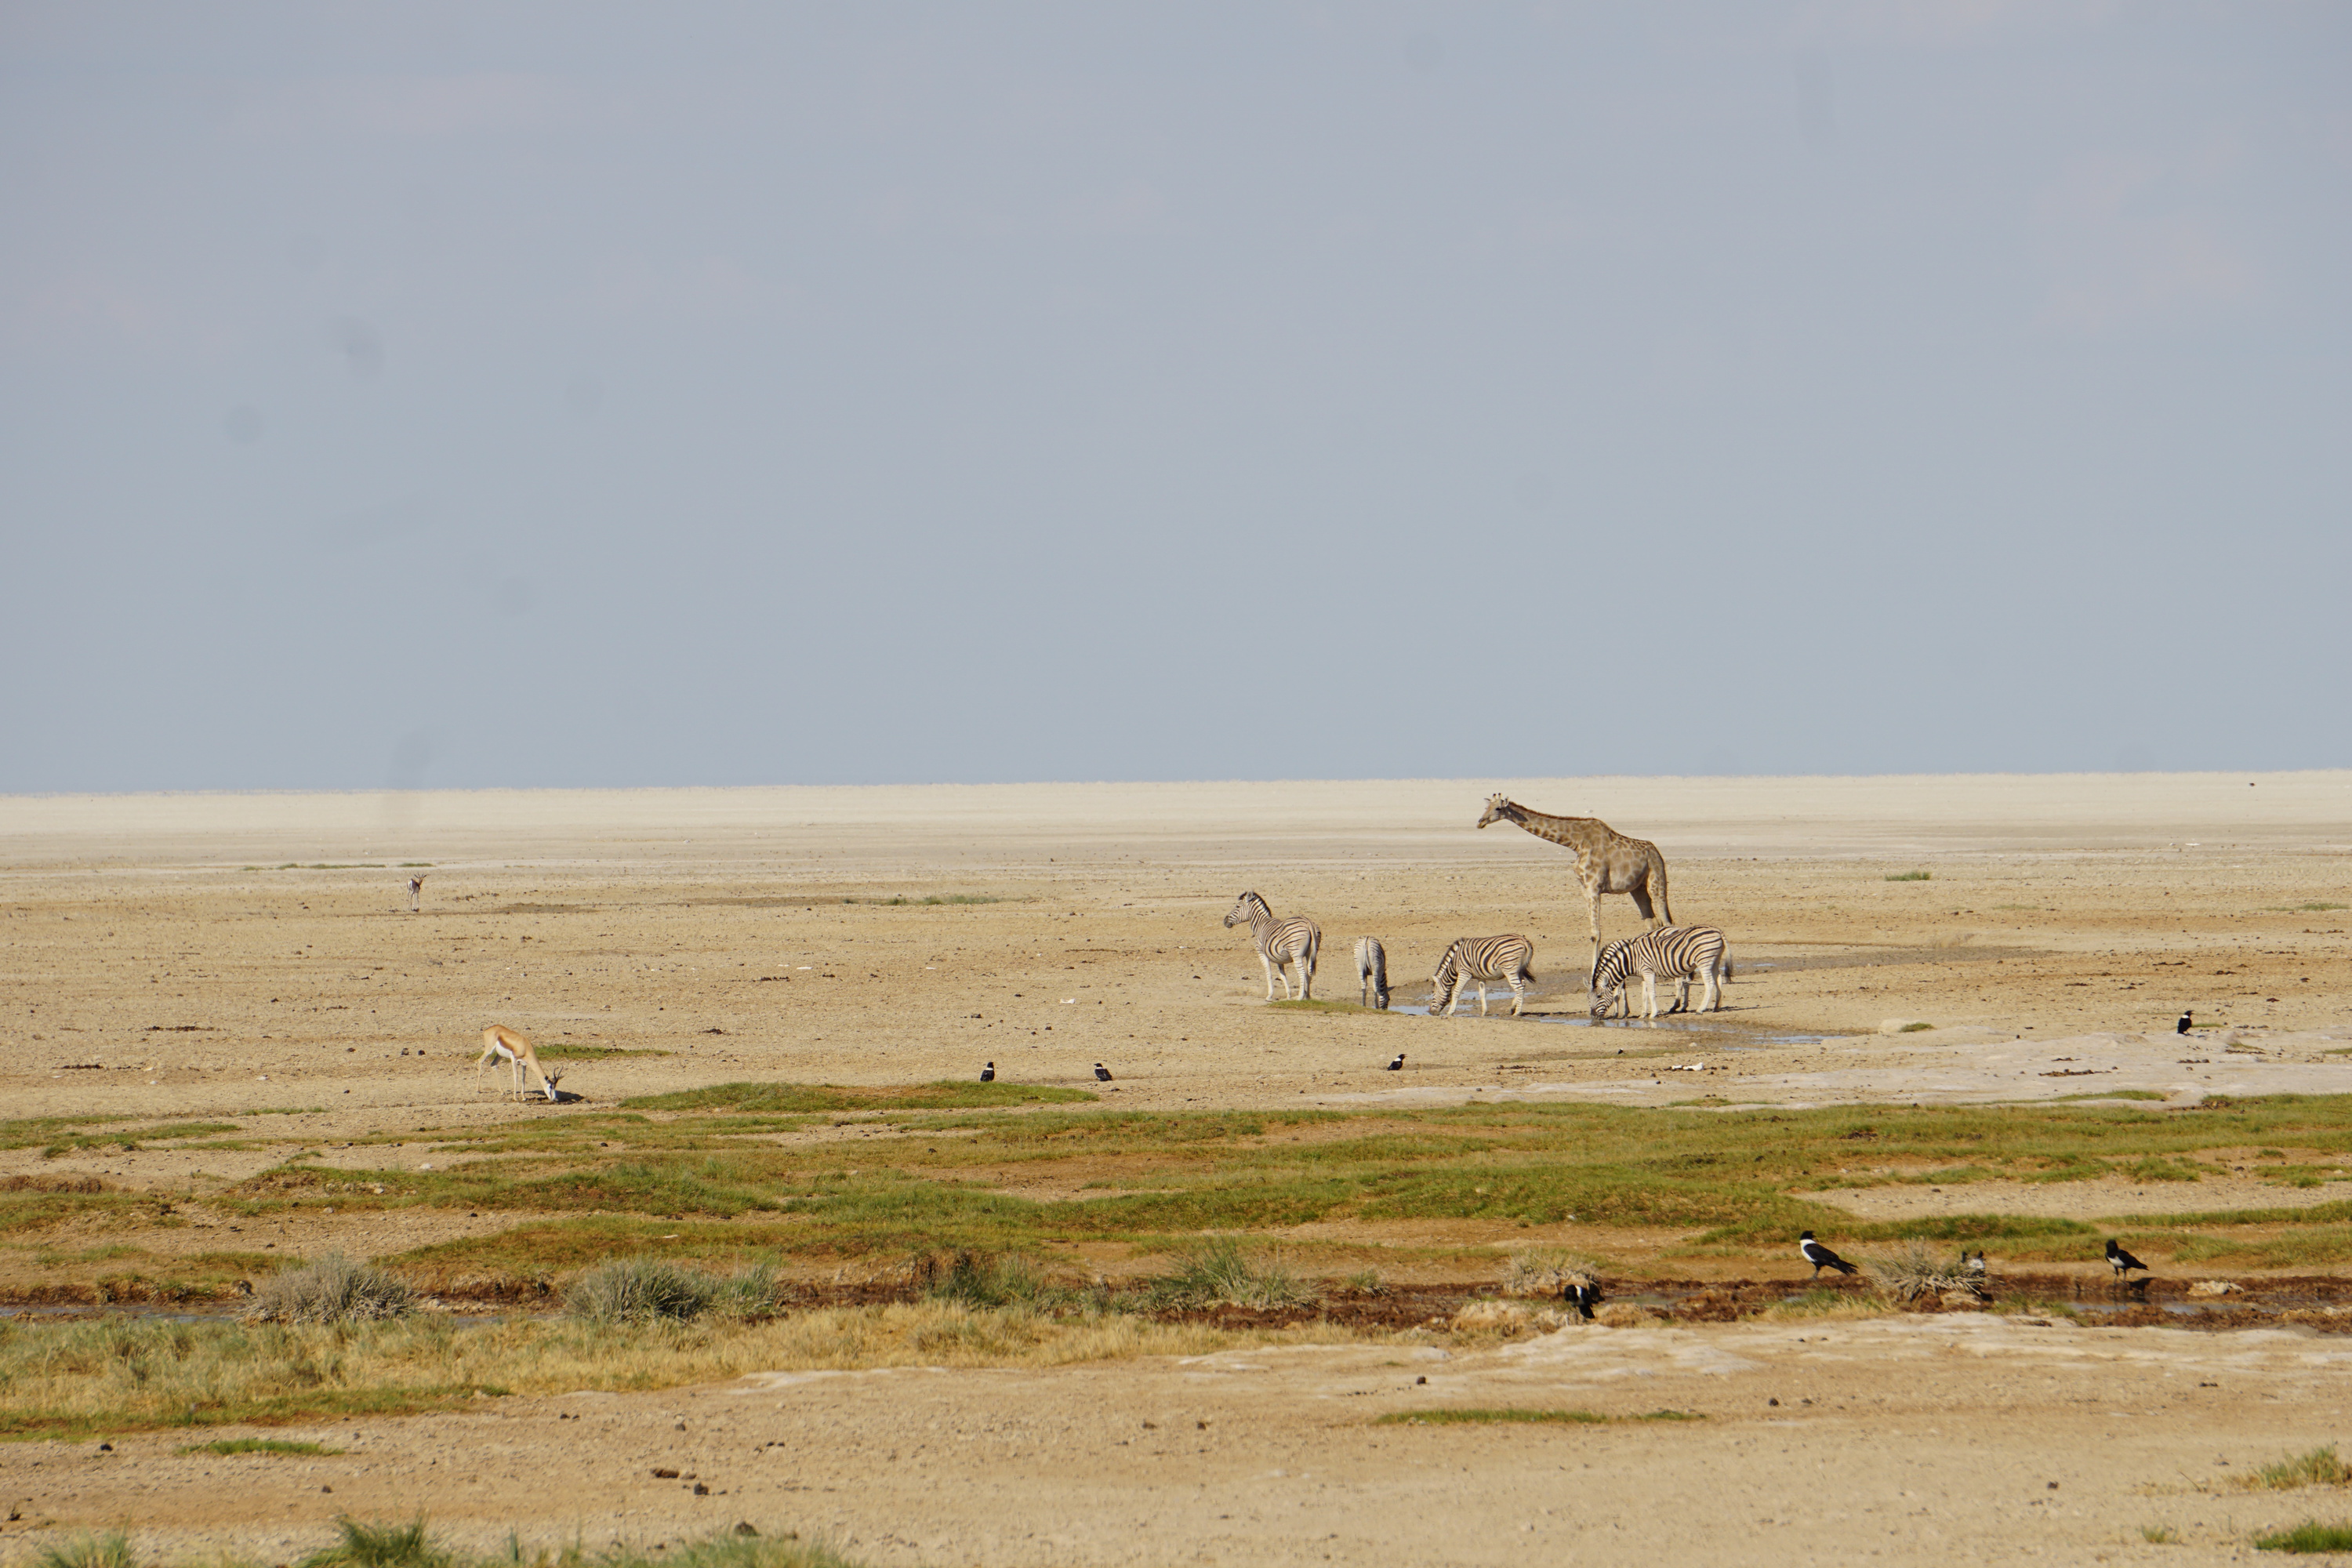 Dal letto asciutto dei fiumi ‘effimeri’ al cuore del deserto del Kalahari, i namibiani contano i millimetri di pioggia